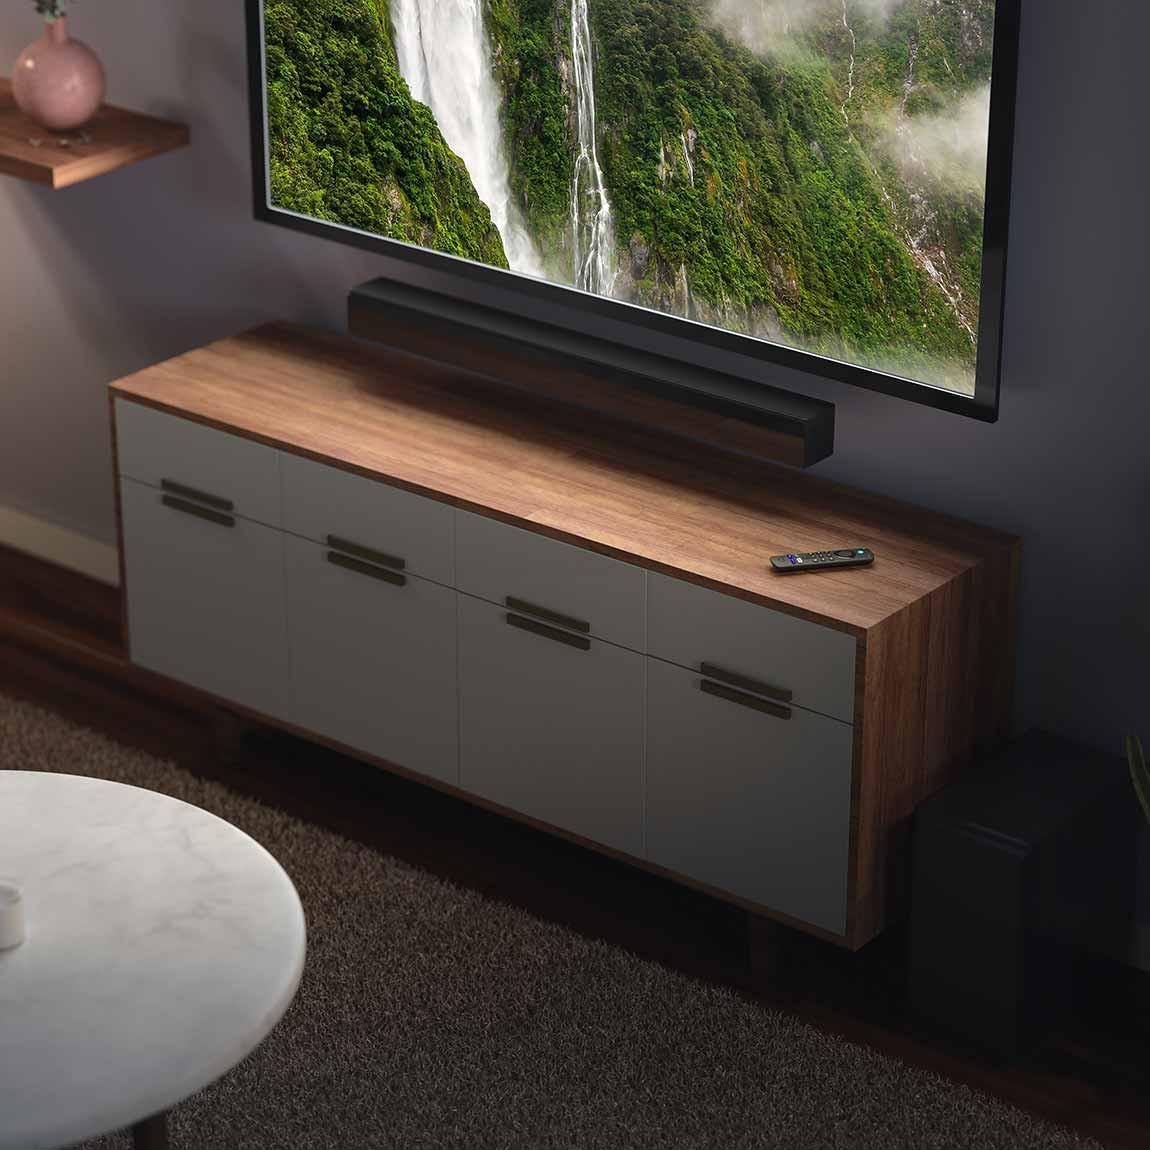 Amazon Fire TV Stick mit Alexa-Sprachfernbedienung und Steuerungsoption für Fernseher - Schwarz_Lifestyle